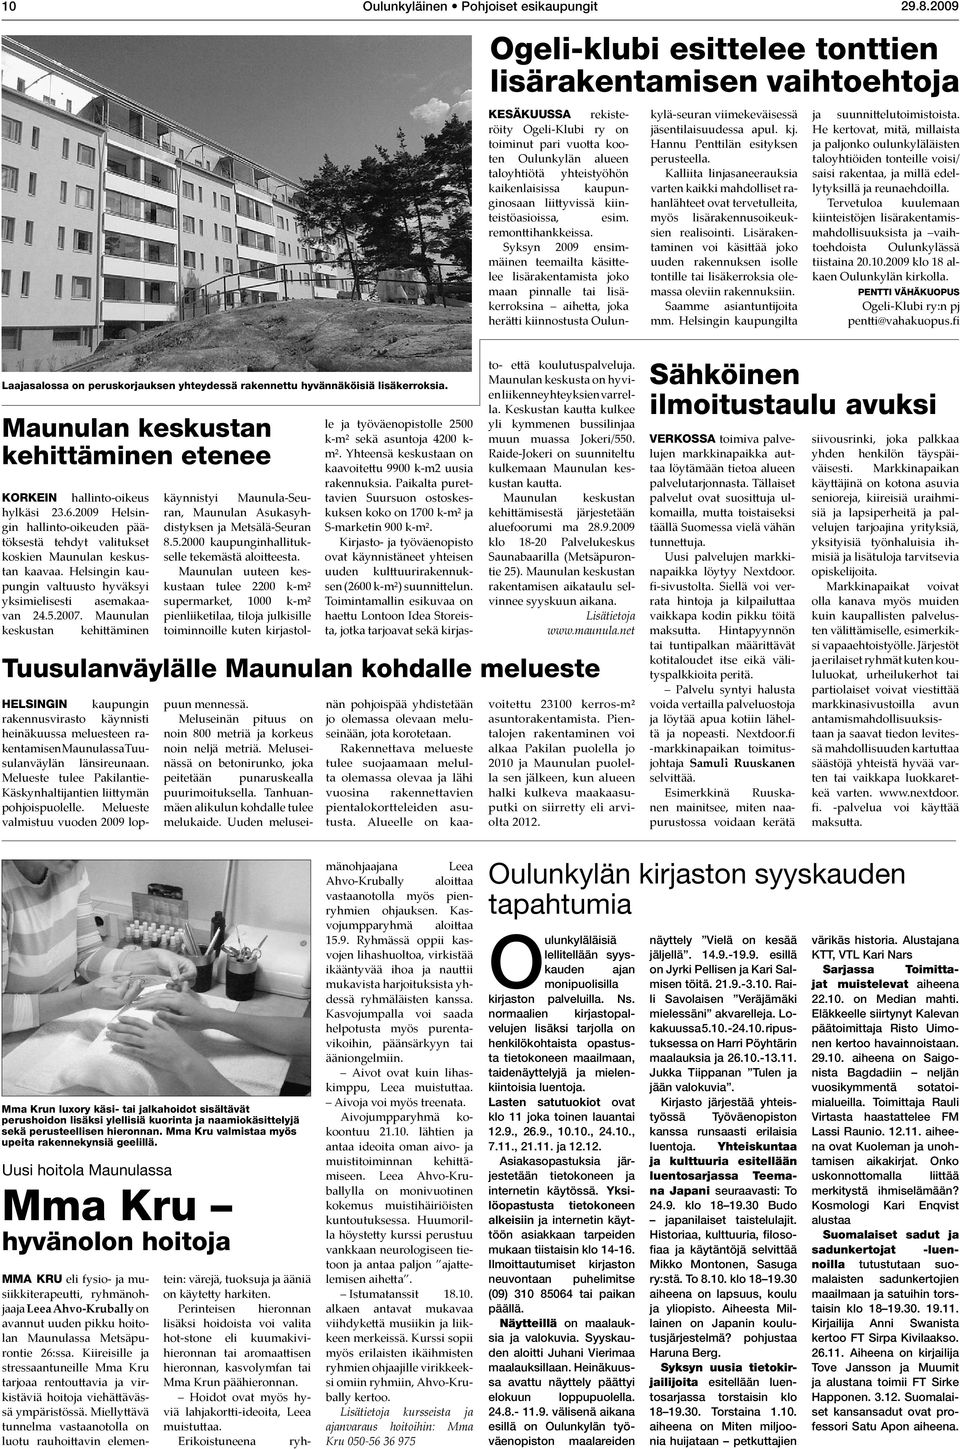 Syksyn 2009 ensimmäinen teemailta käsittelee lisärakentamista joko maan pinnalle tai lisäkerroksina aihetta, joka herätti kiinnostusta Oulun- kylä-seuran viimekeväisessä jäsentilaisuudessa apul. kj.